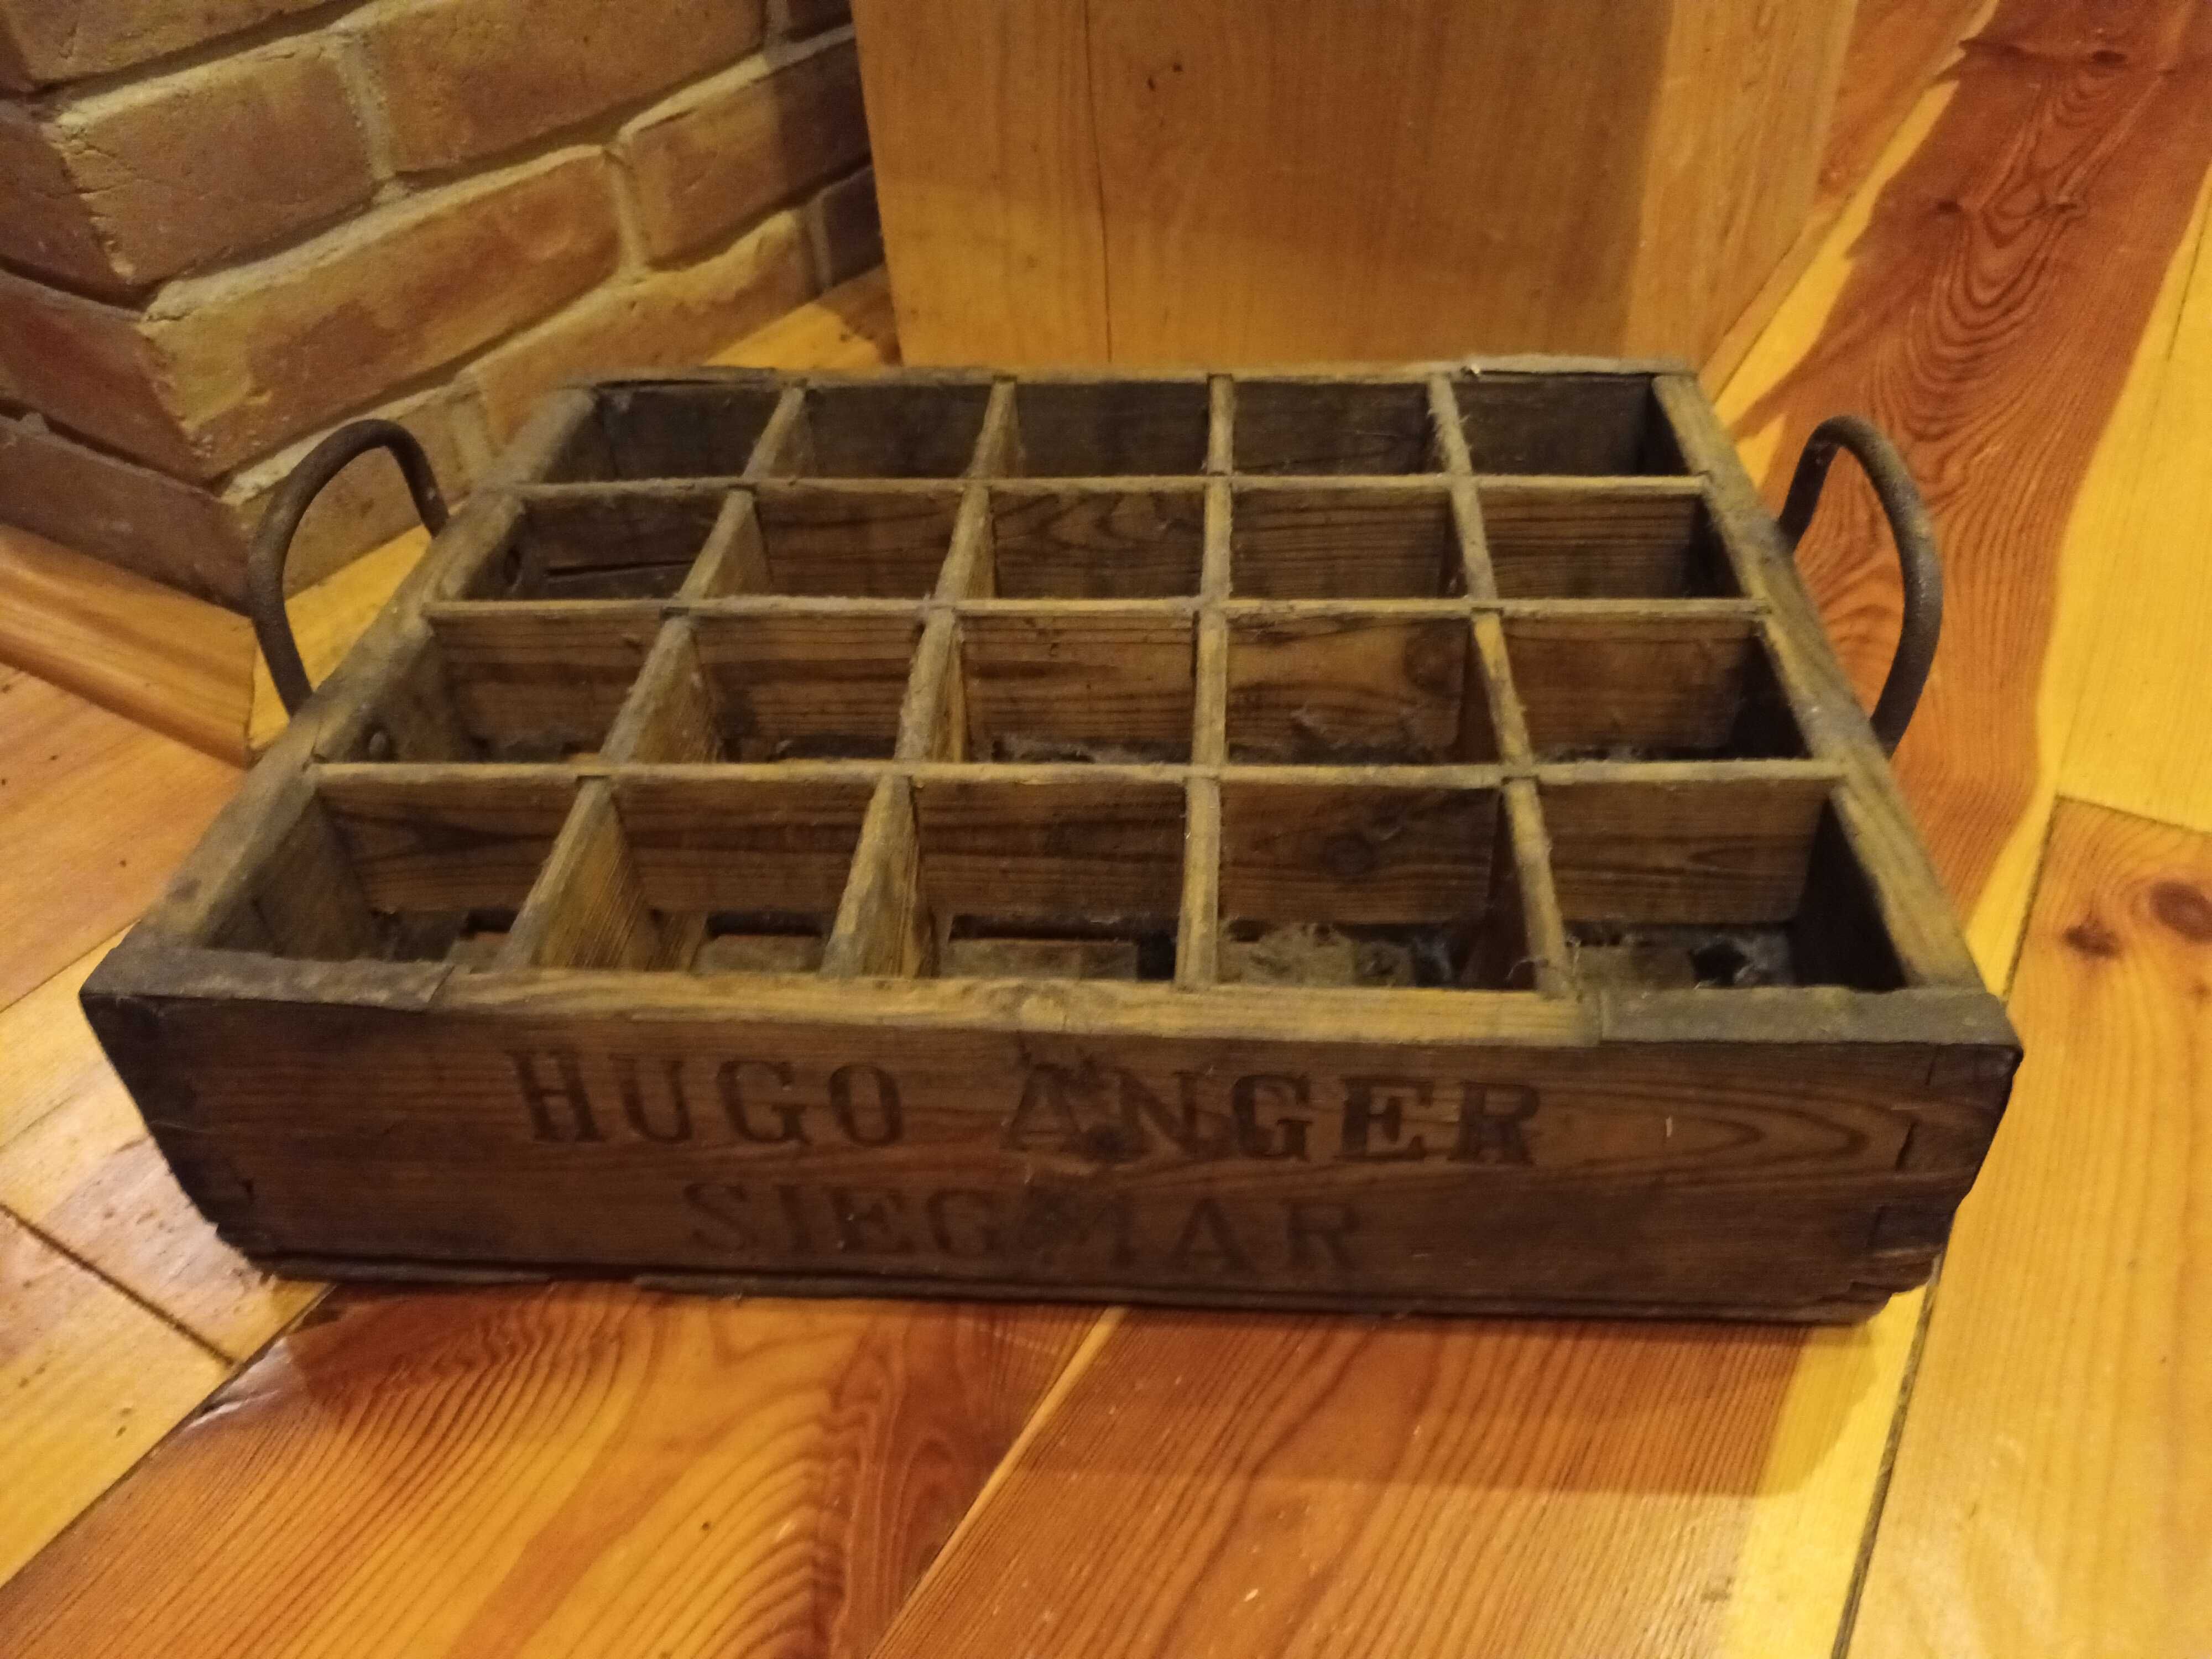 stara przedwojenna skrzynka na butelki Hugo Anger Siegmar